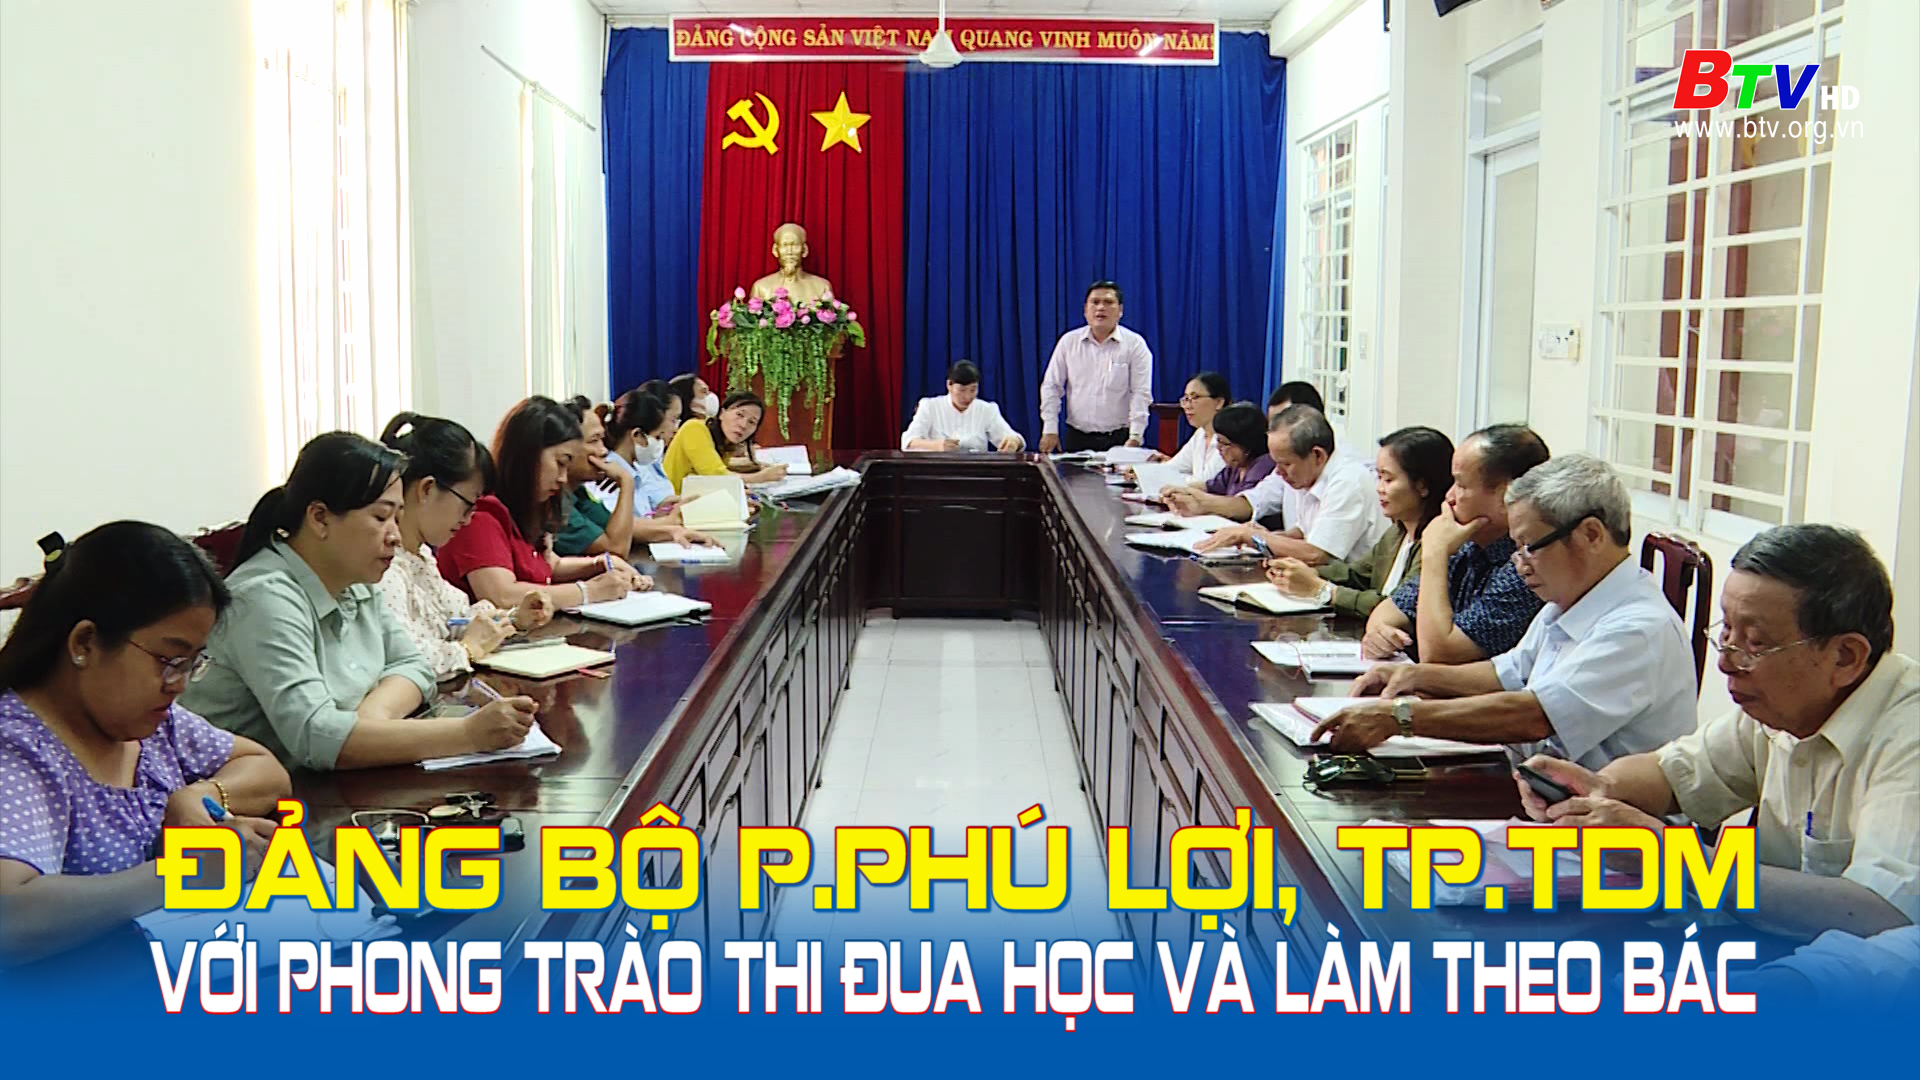 Đảng bộ phường Phú Lợi, TP.TDM với phong trào thi đua học và làm theo Bác